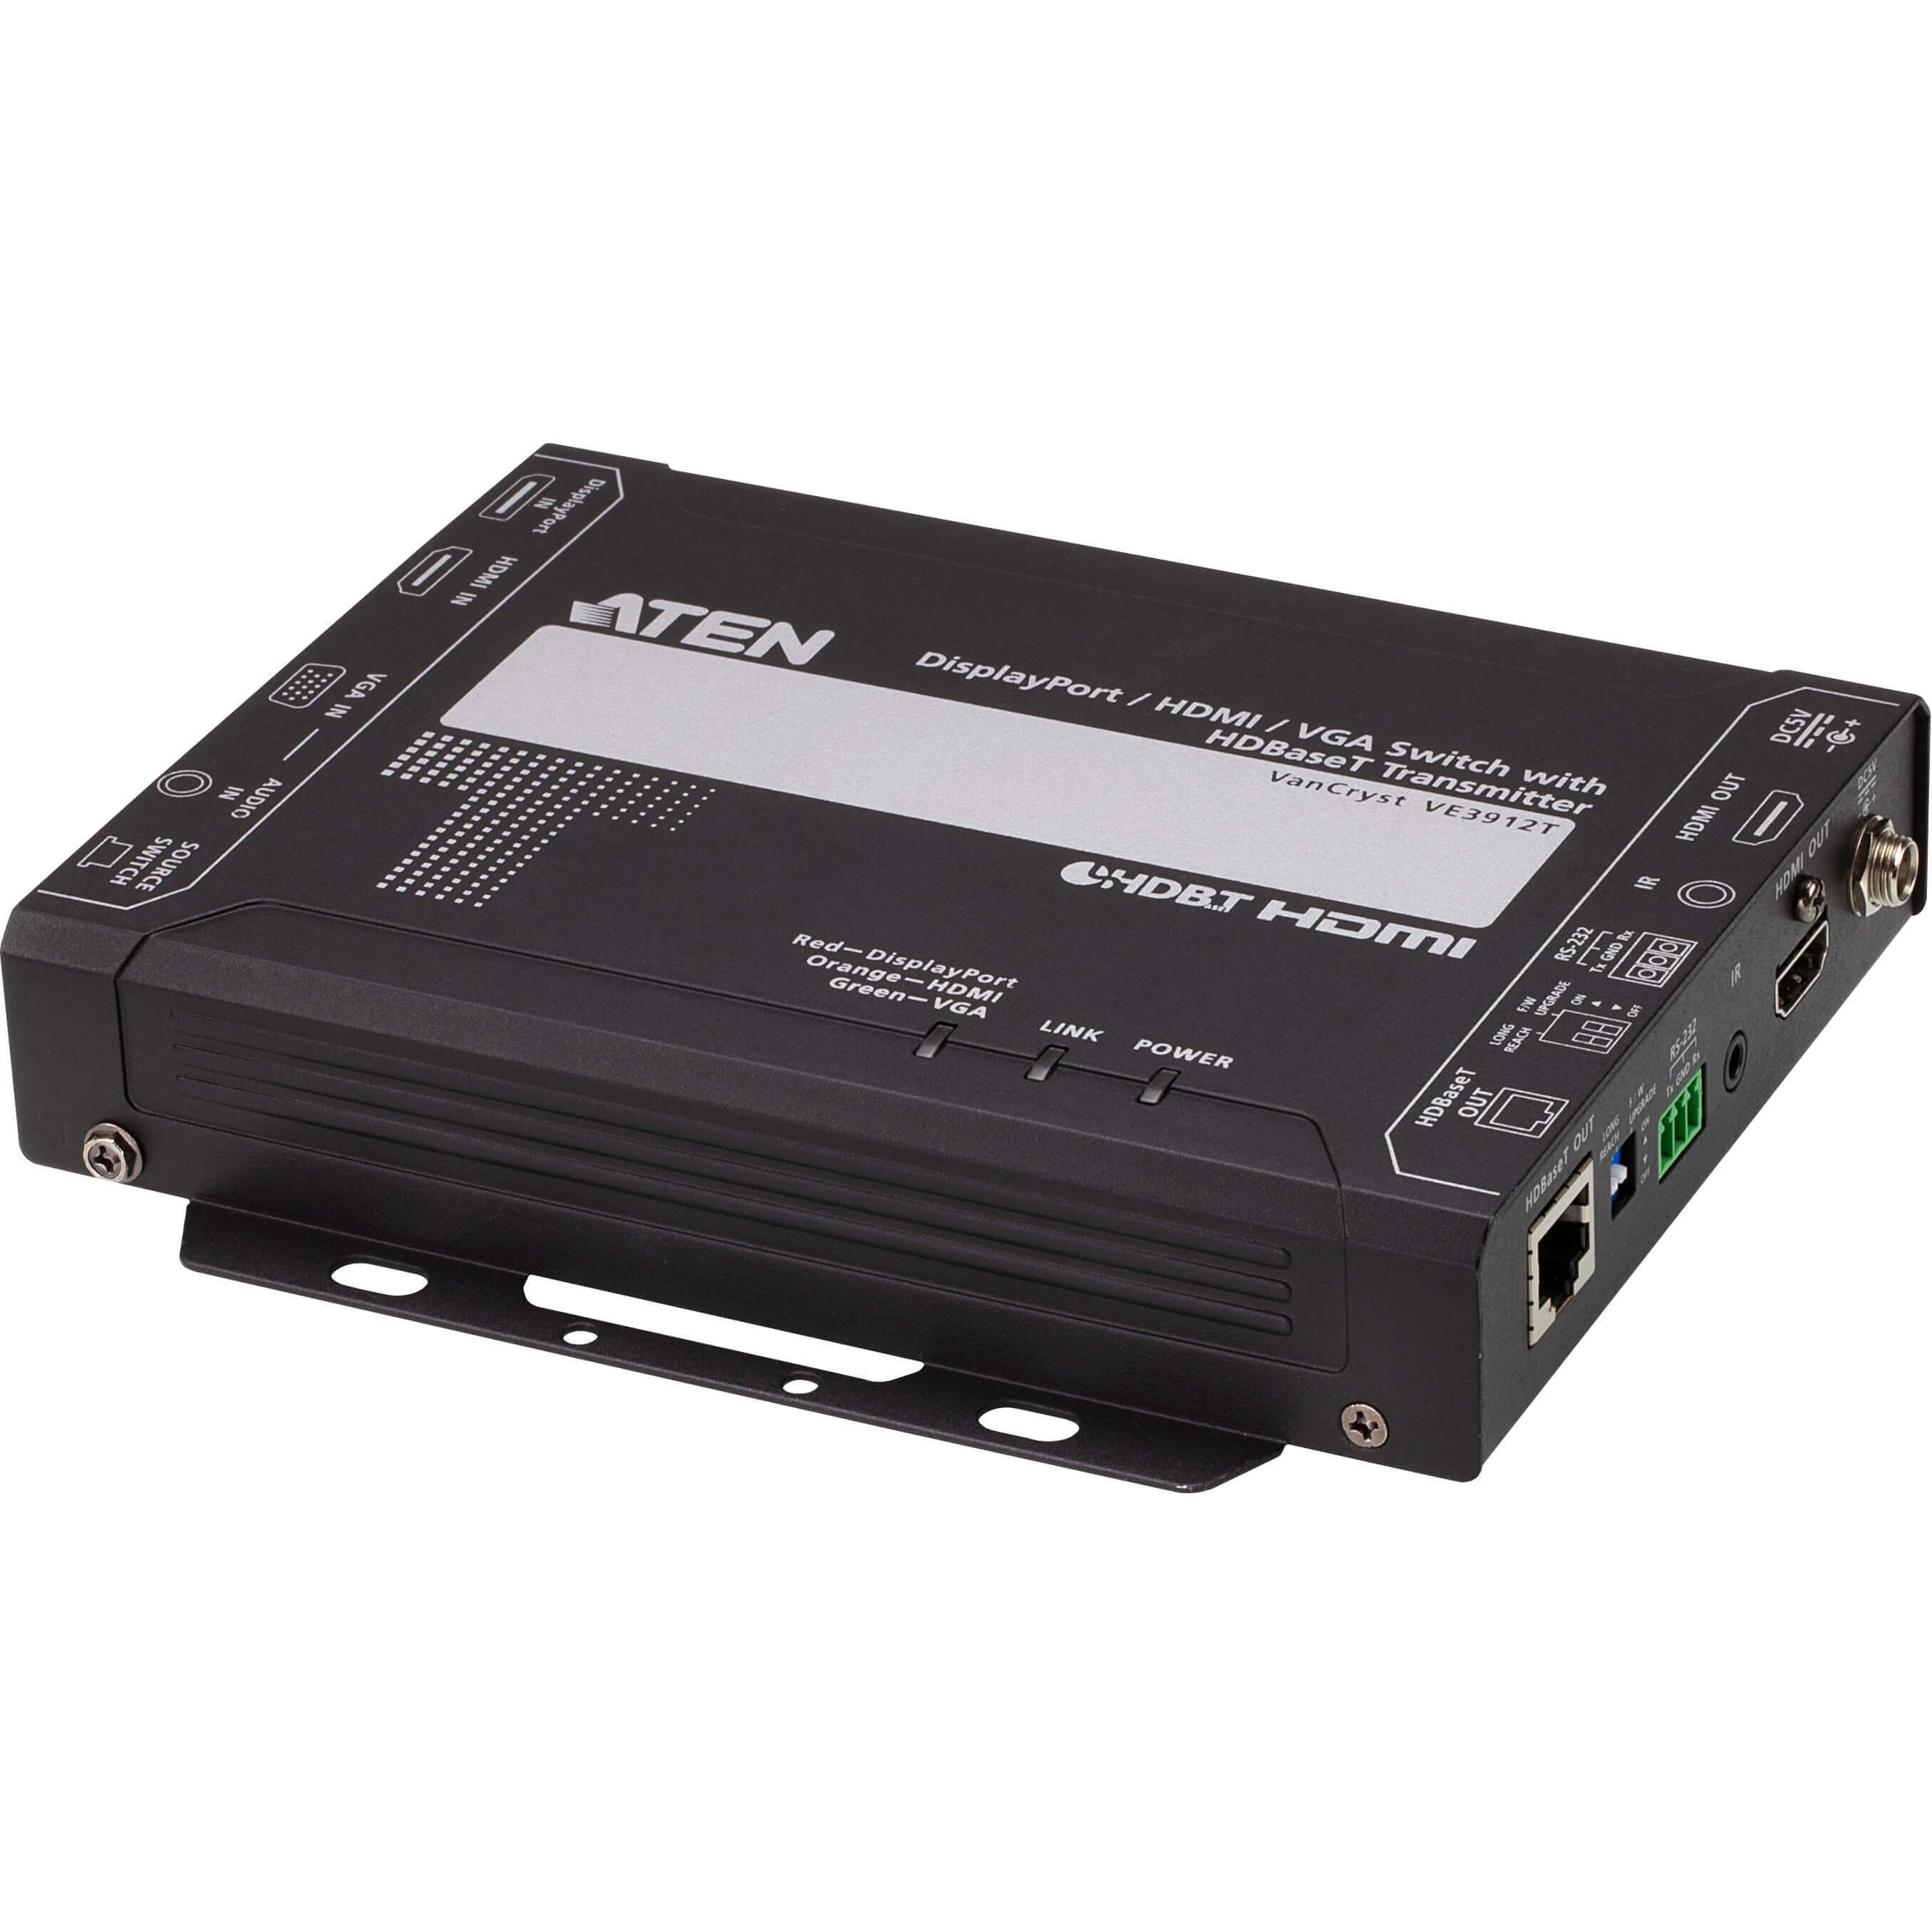   Dport vido   metteur HDBaseT DP / HDMI et VGA avec POH 4k@100m VE3912T-AT-G